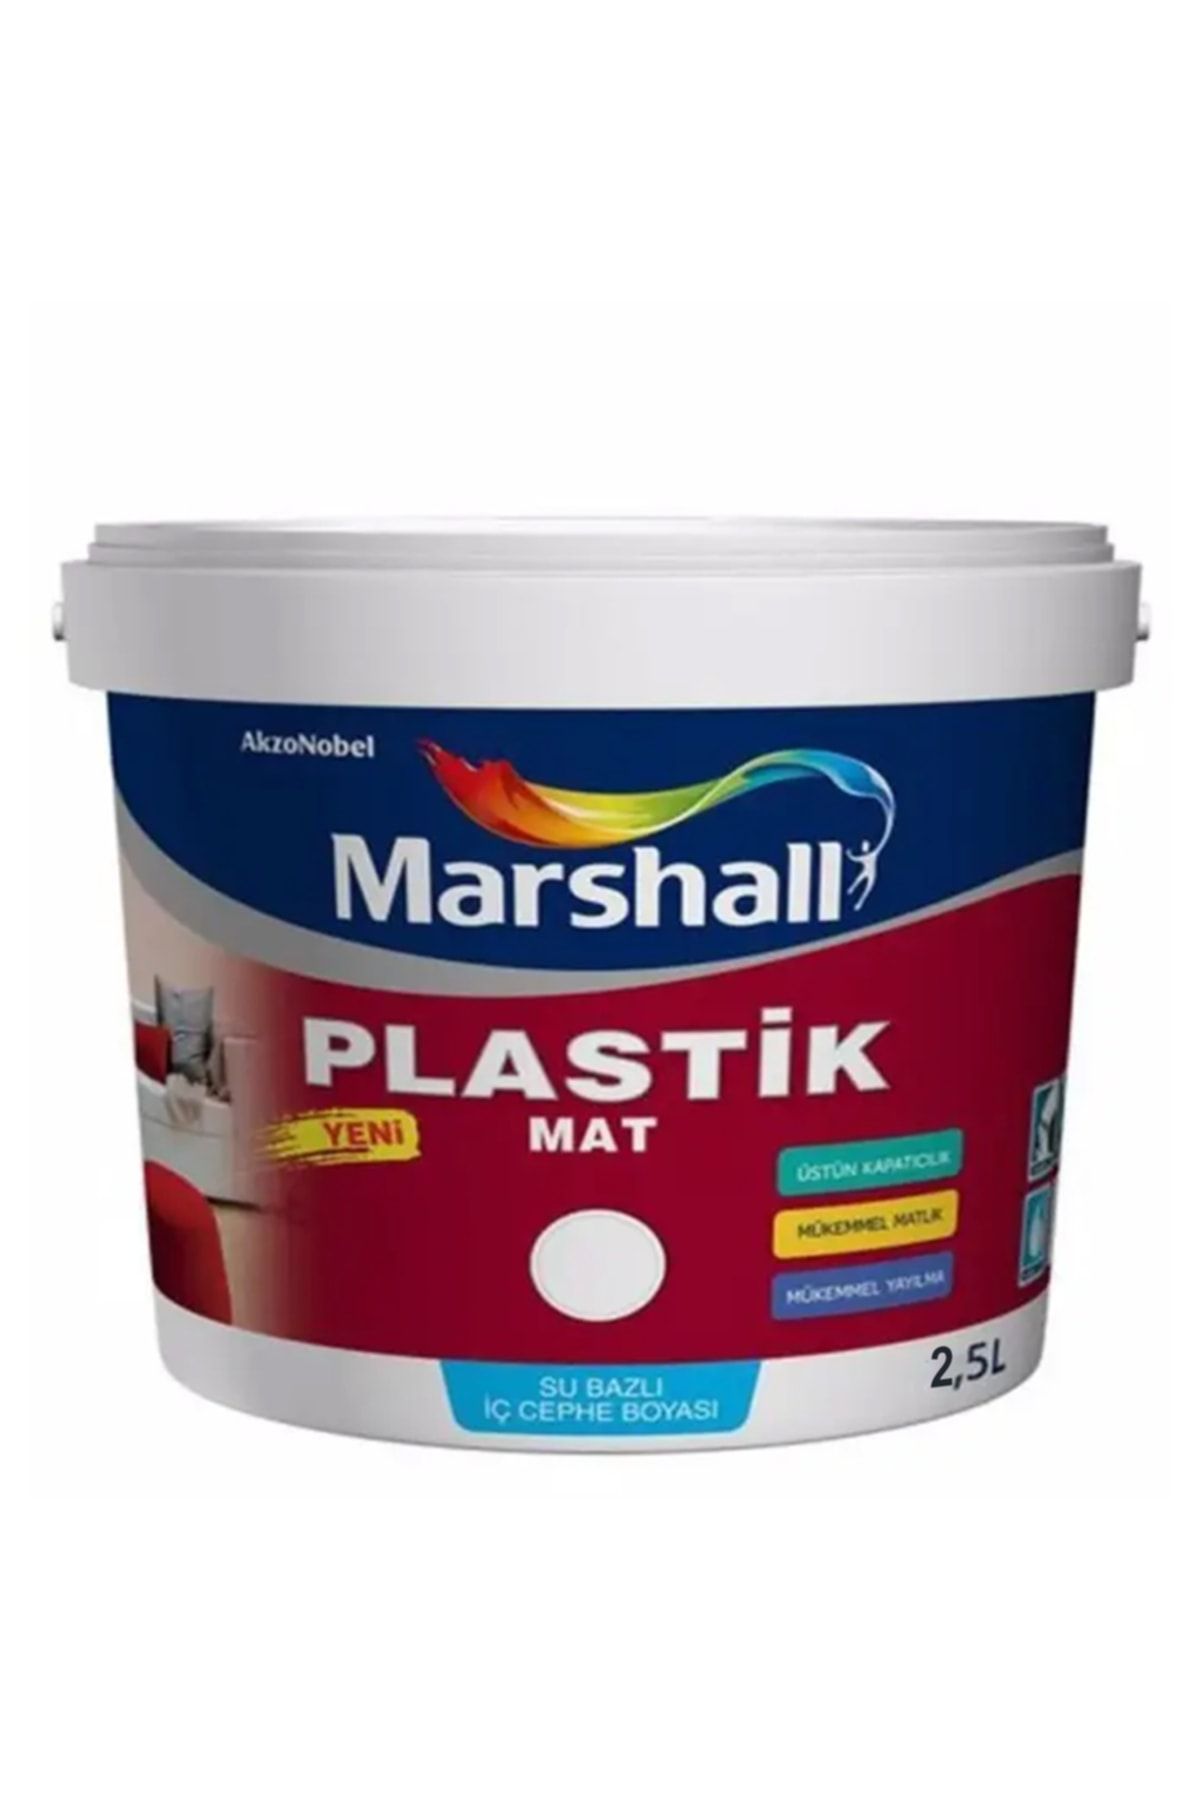 Marshall Plastik Mat Silinebilir Iç Cephe Boyası Mürdüm 2,5 Lt (3,5 Kg)